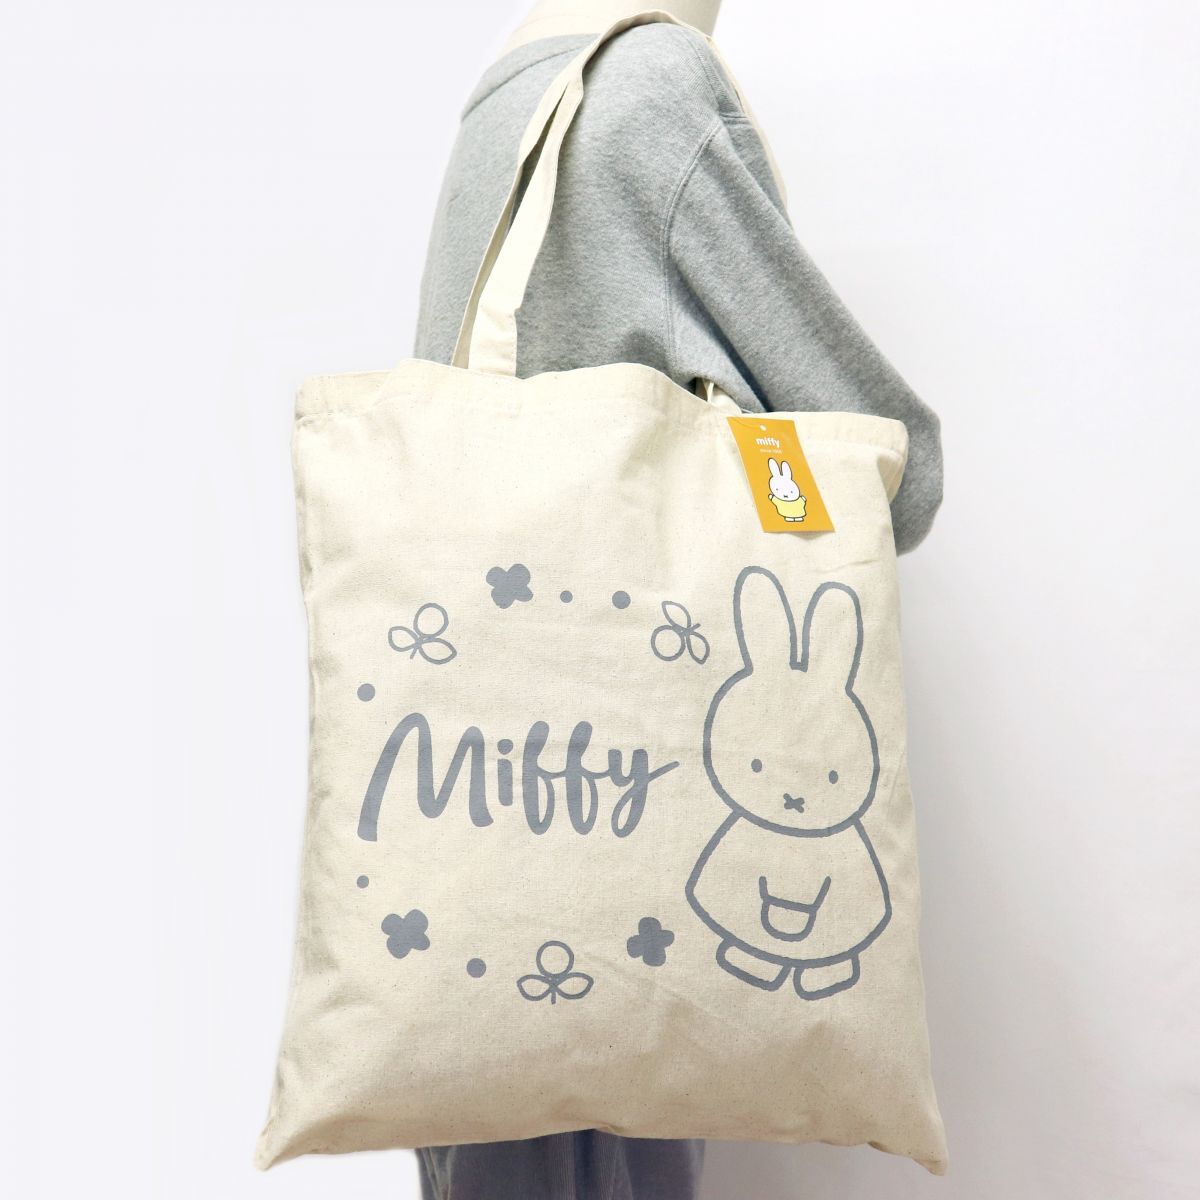 * стоимость доставки 390 иен возможность товар Miffy MIFFY... Chan новый товар брезент парусина большая сумка BAG портфель сумка [MIFFY-GRY1N] один шесть *QWER*